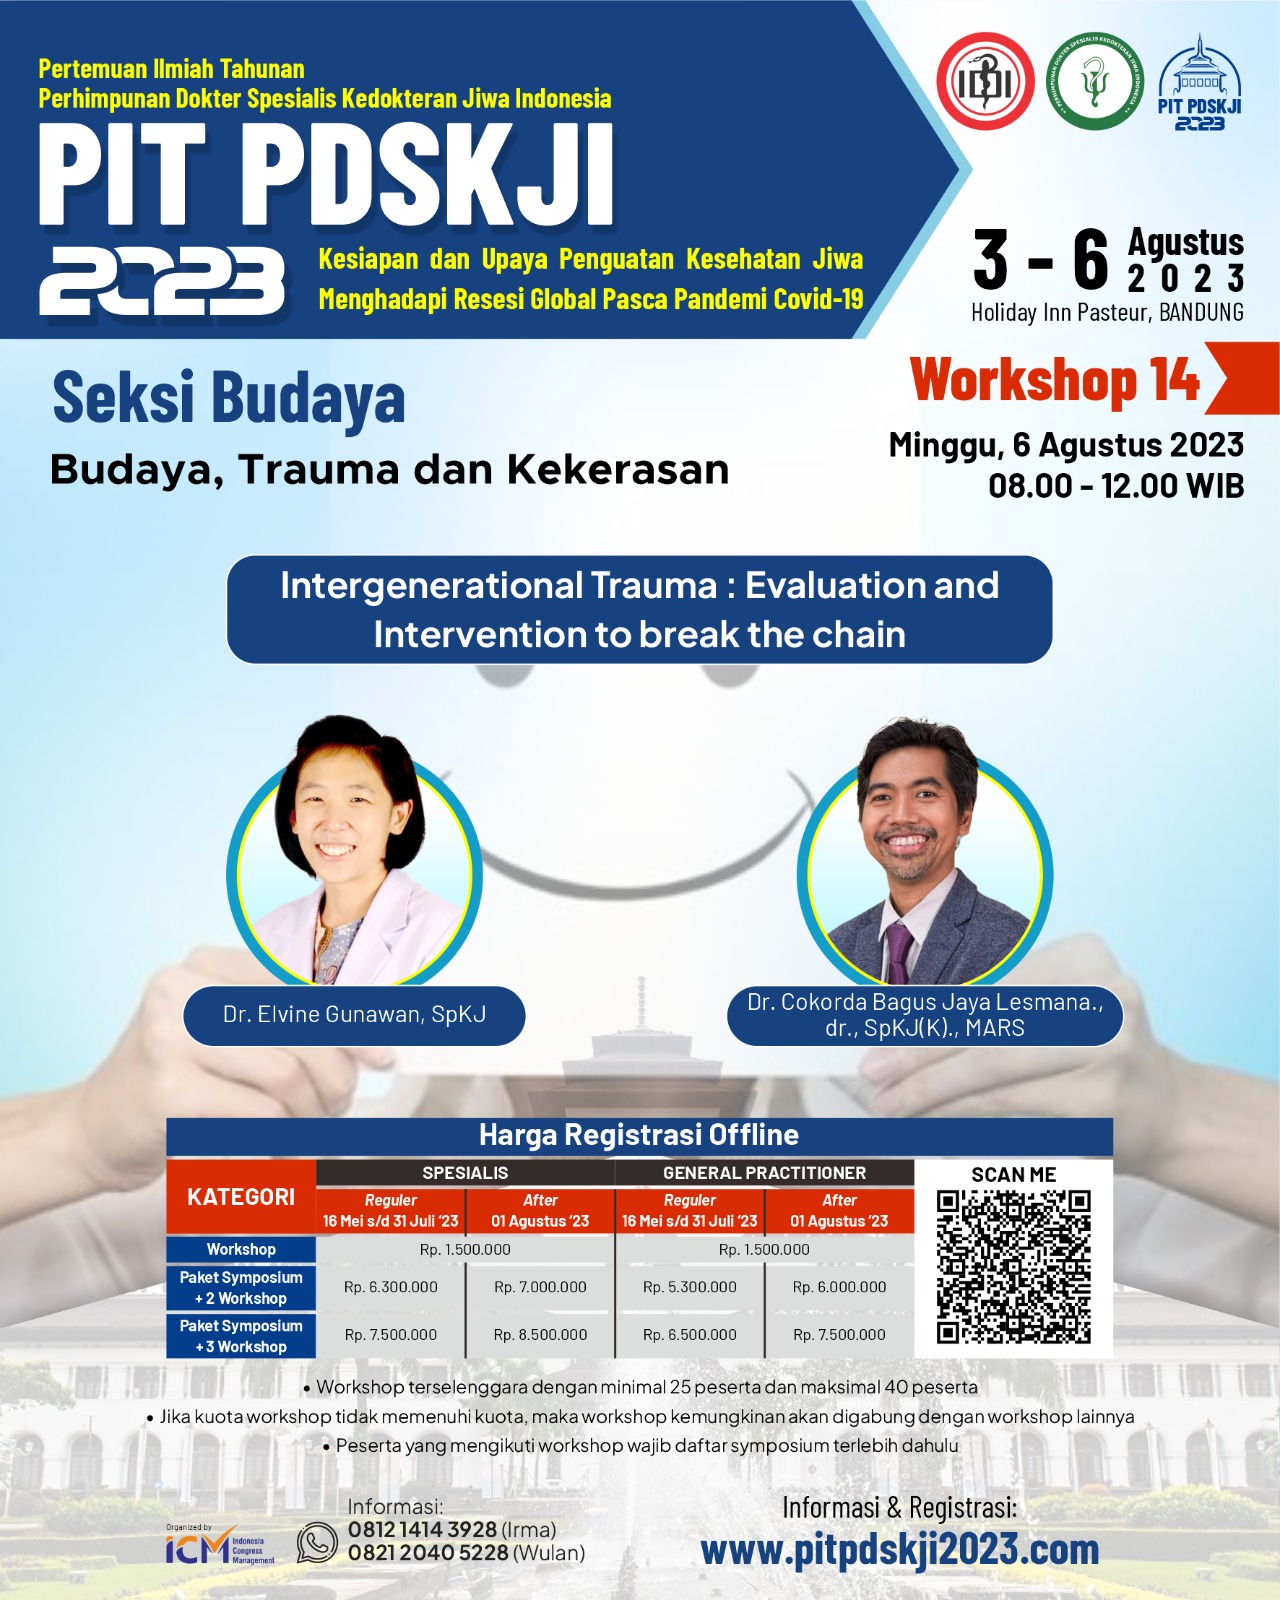 PIT PDSKJI Workshop 14 : Seksi Budaya